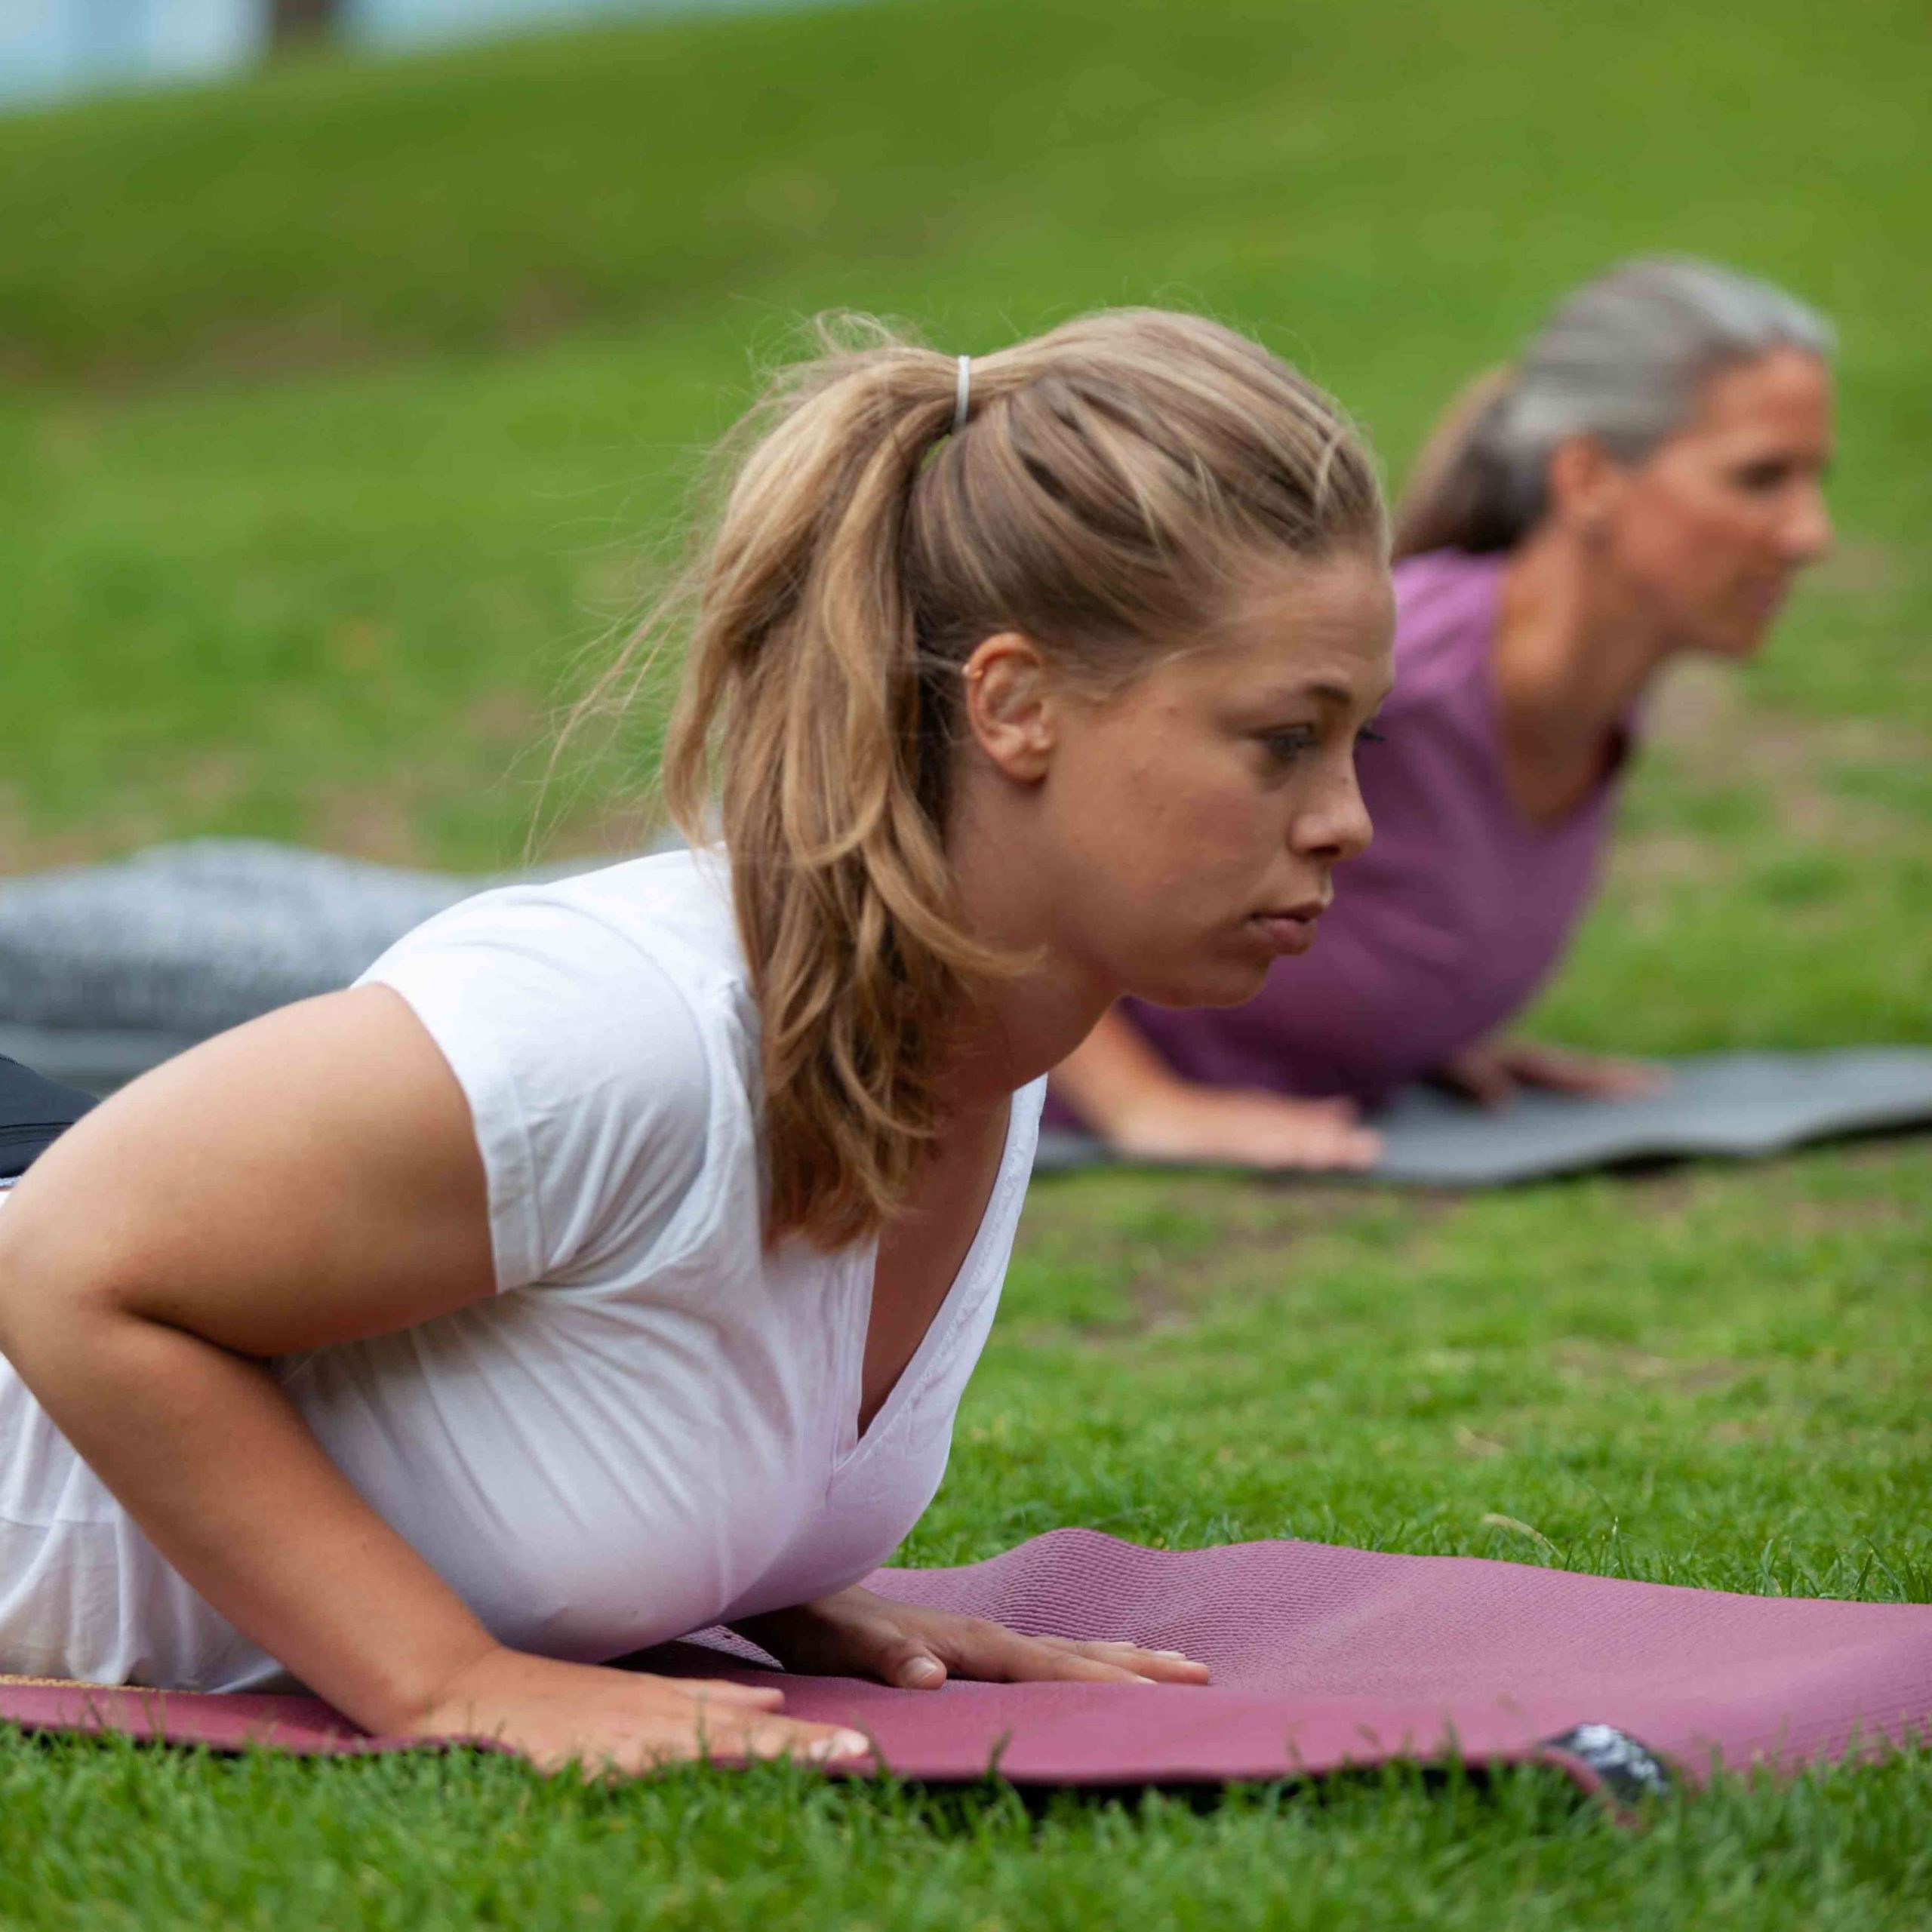 Frau liegt auf einer Yoga-Matte und praktiziert die "Kobra"